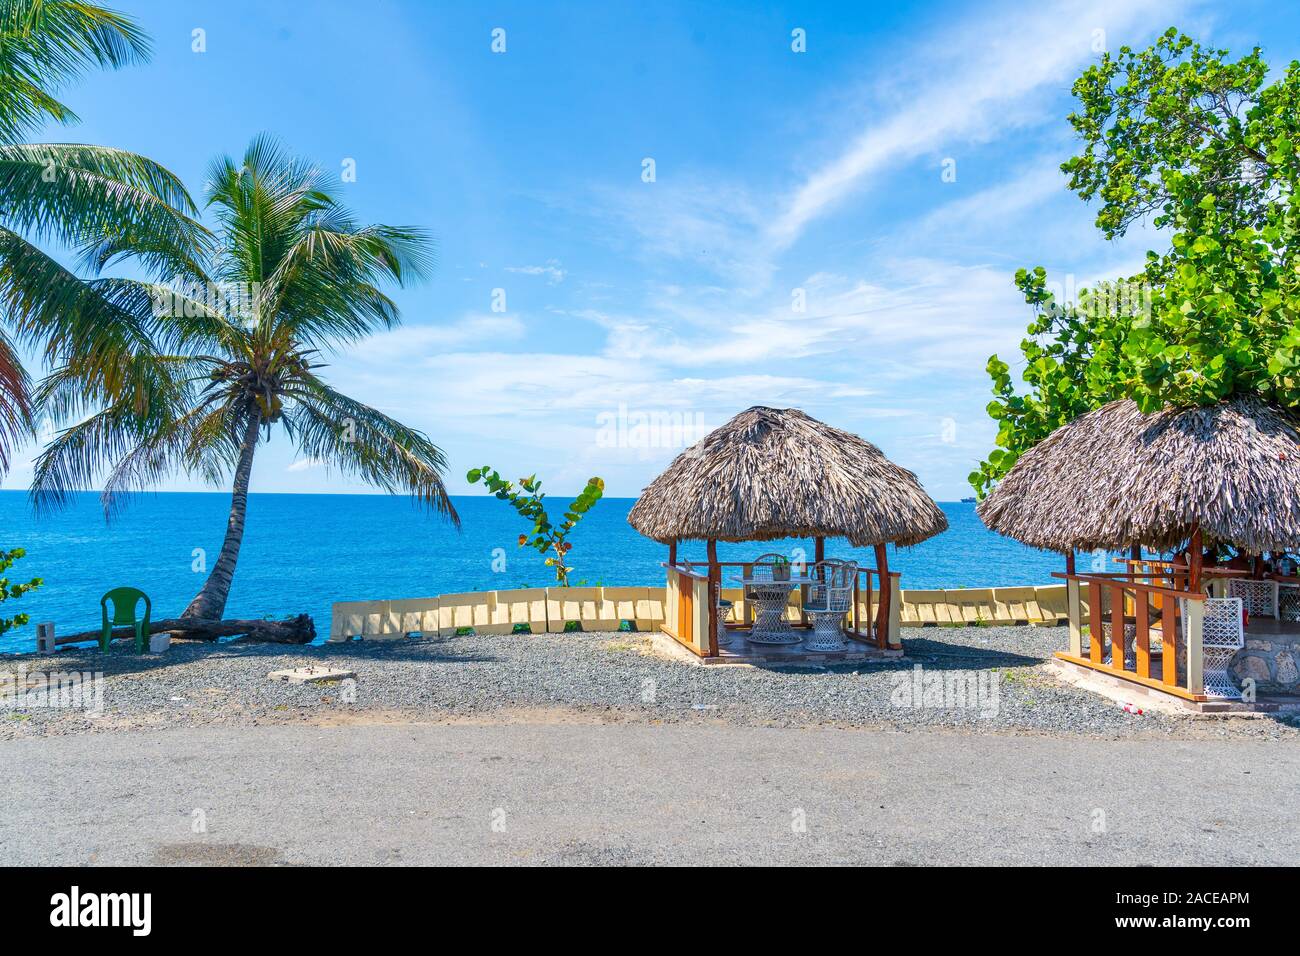 Tropische einen herrlichen Blick auf das Meer mit Palmen und Hütten aus der Dominikanischen Republik. Stockfoto